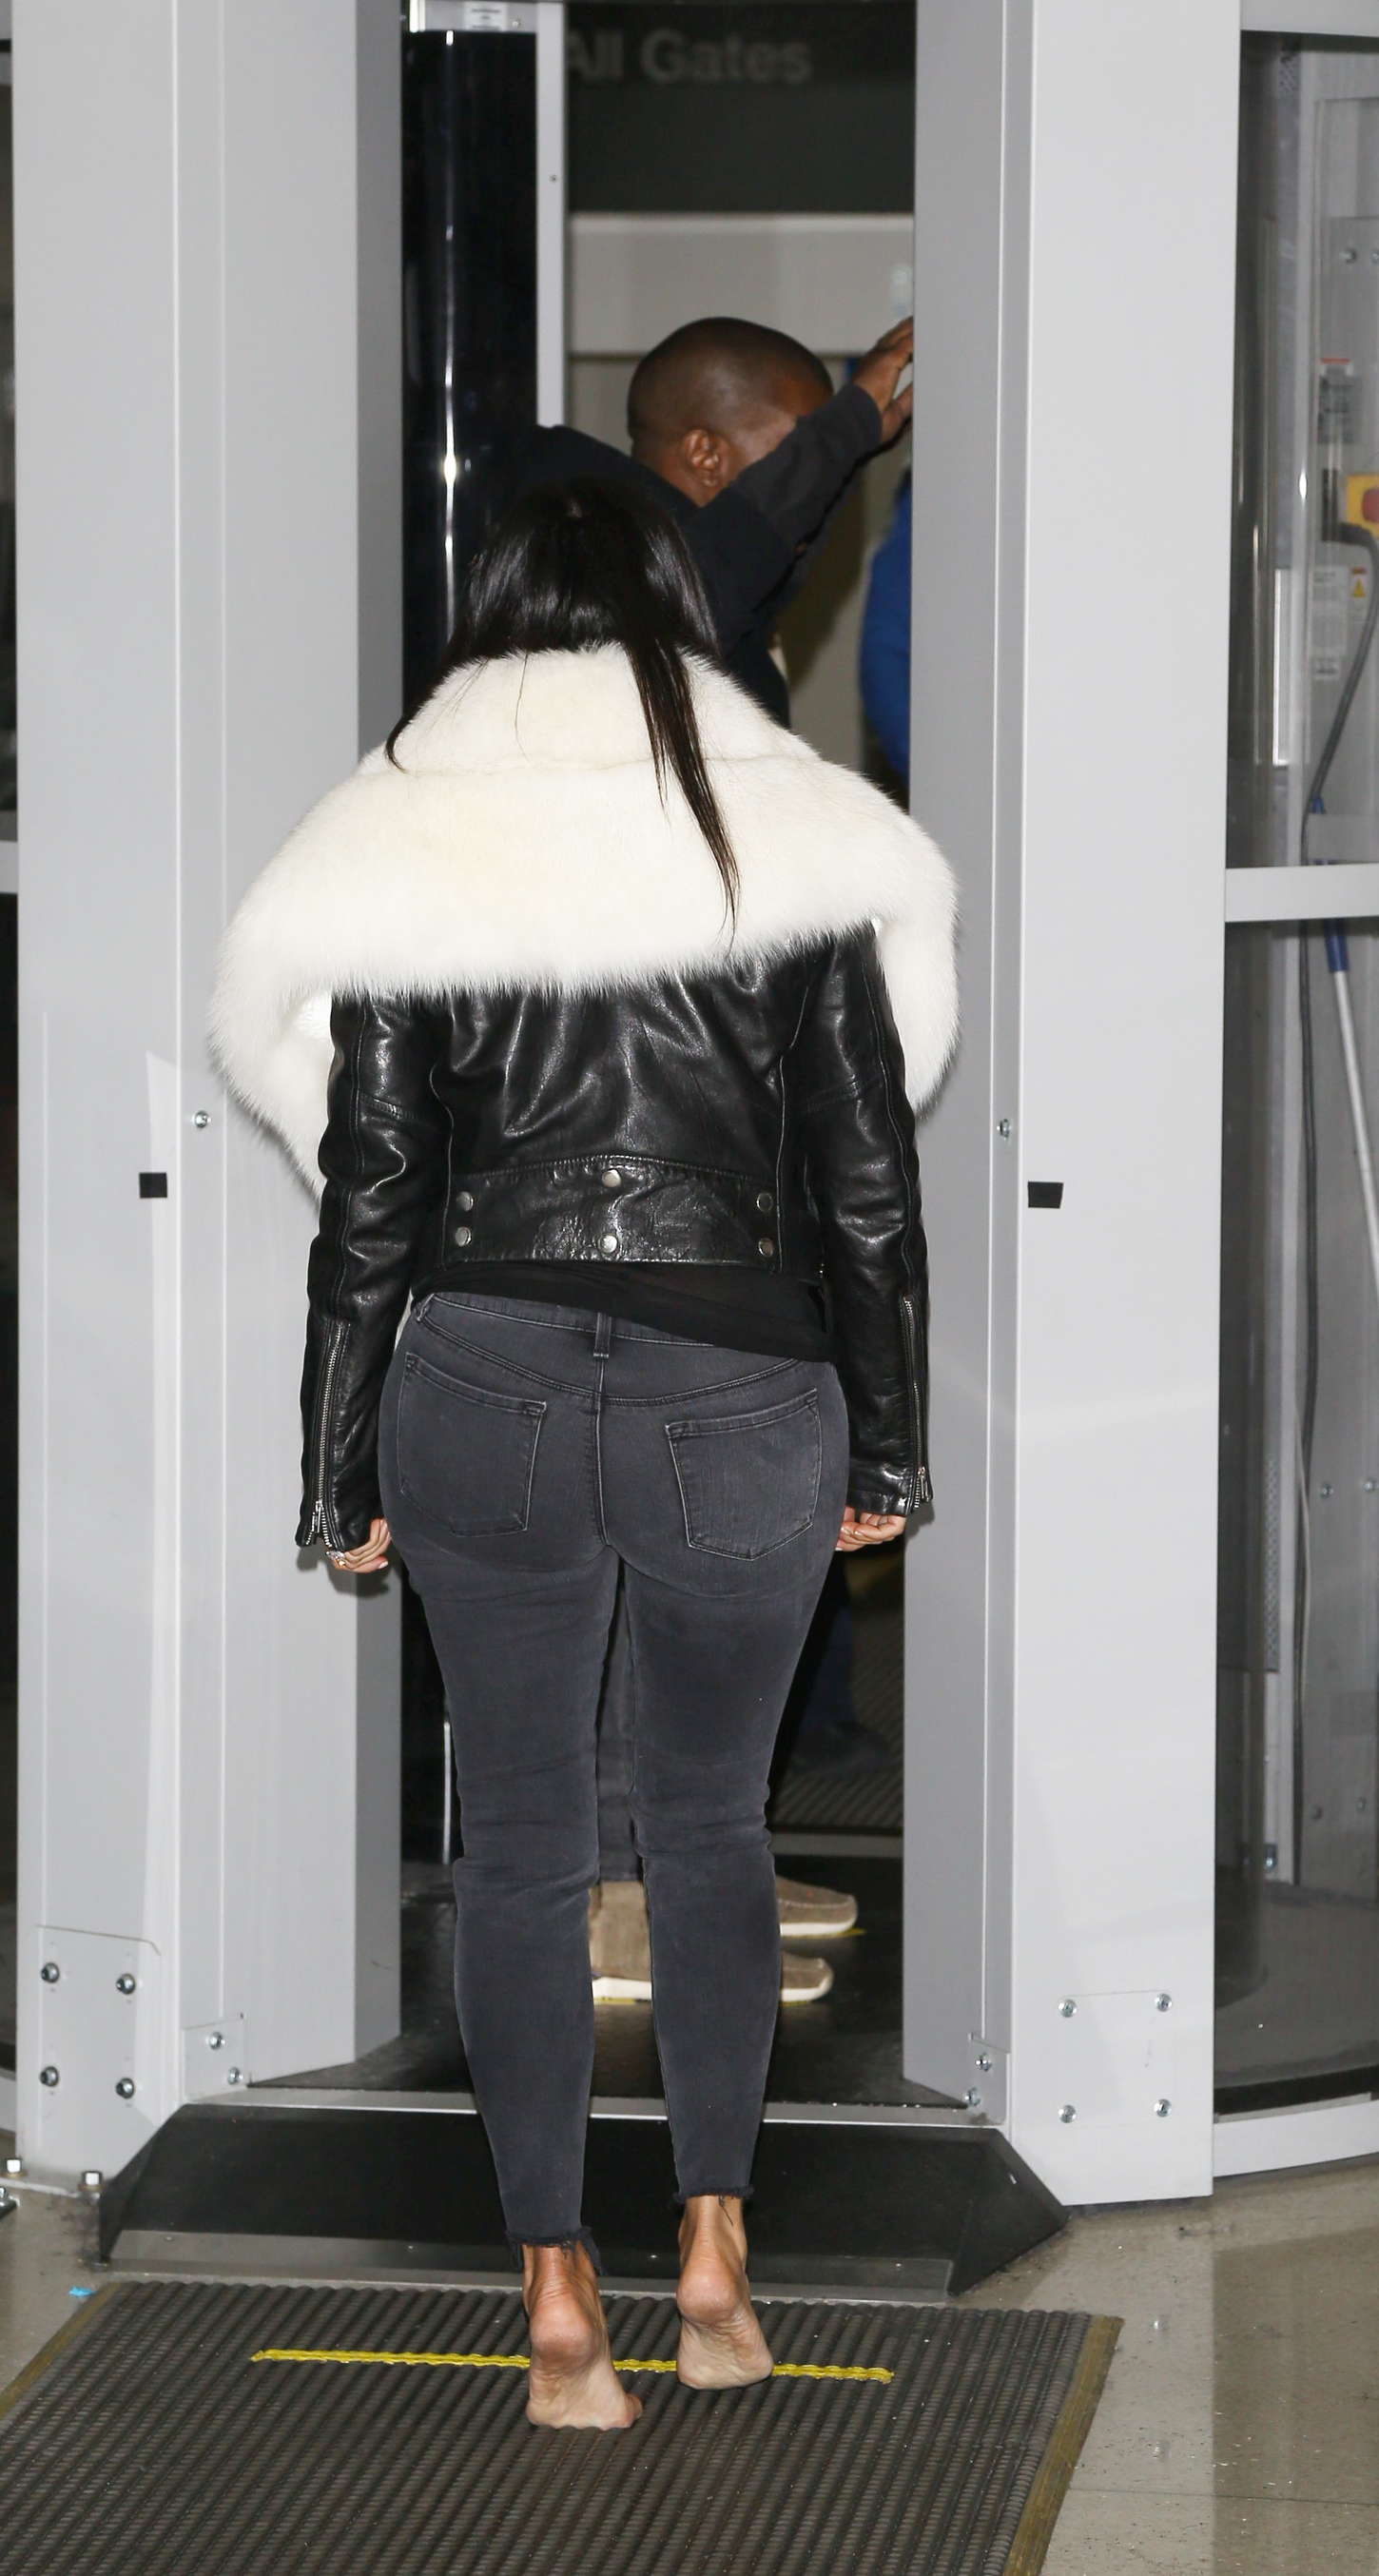 Kim Kardashian Booty In Jeans 71 Gotceleb